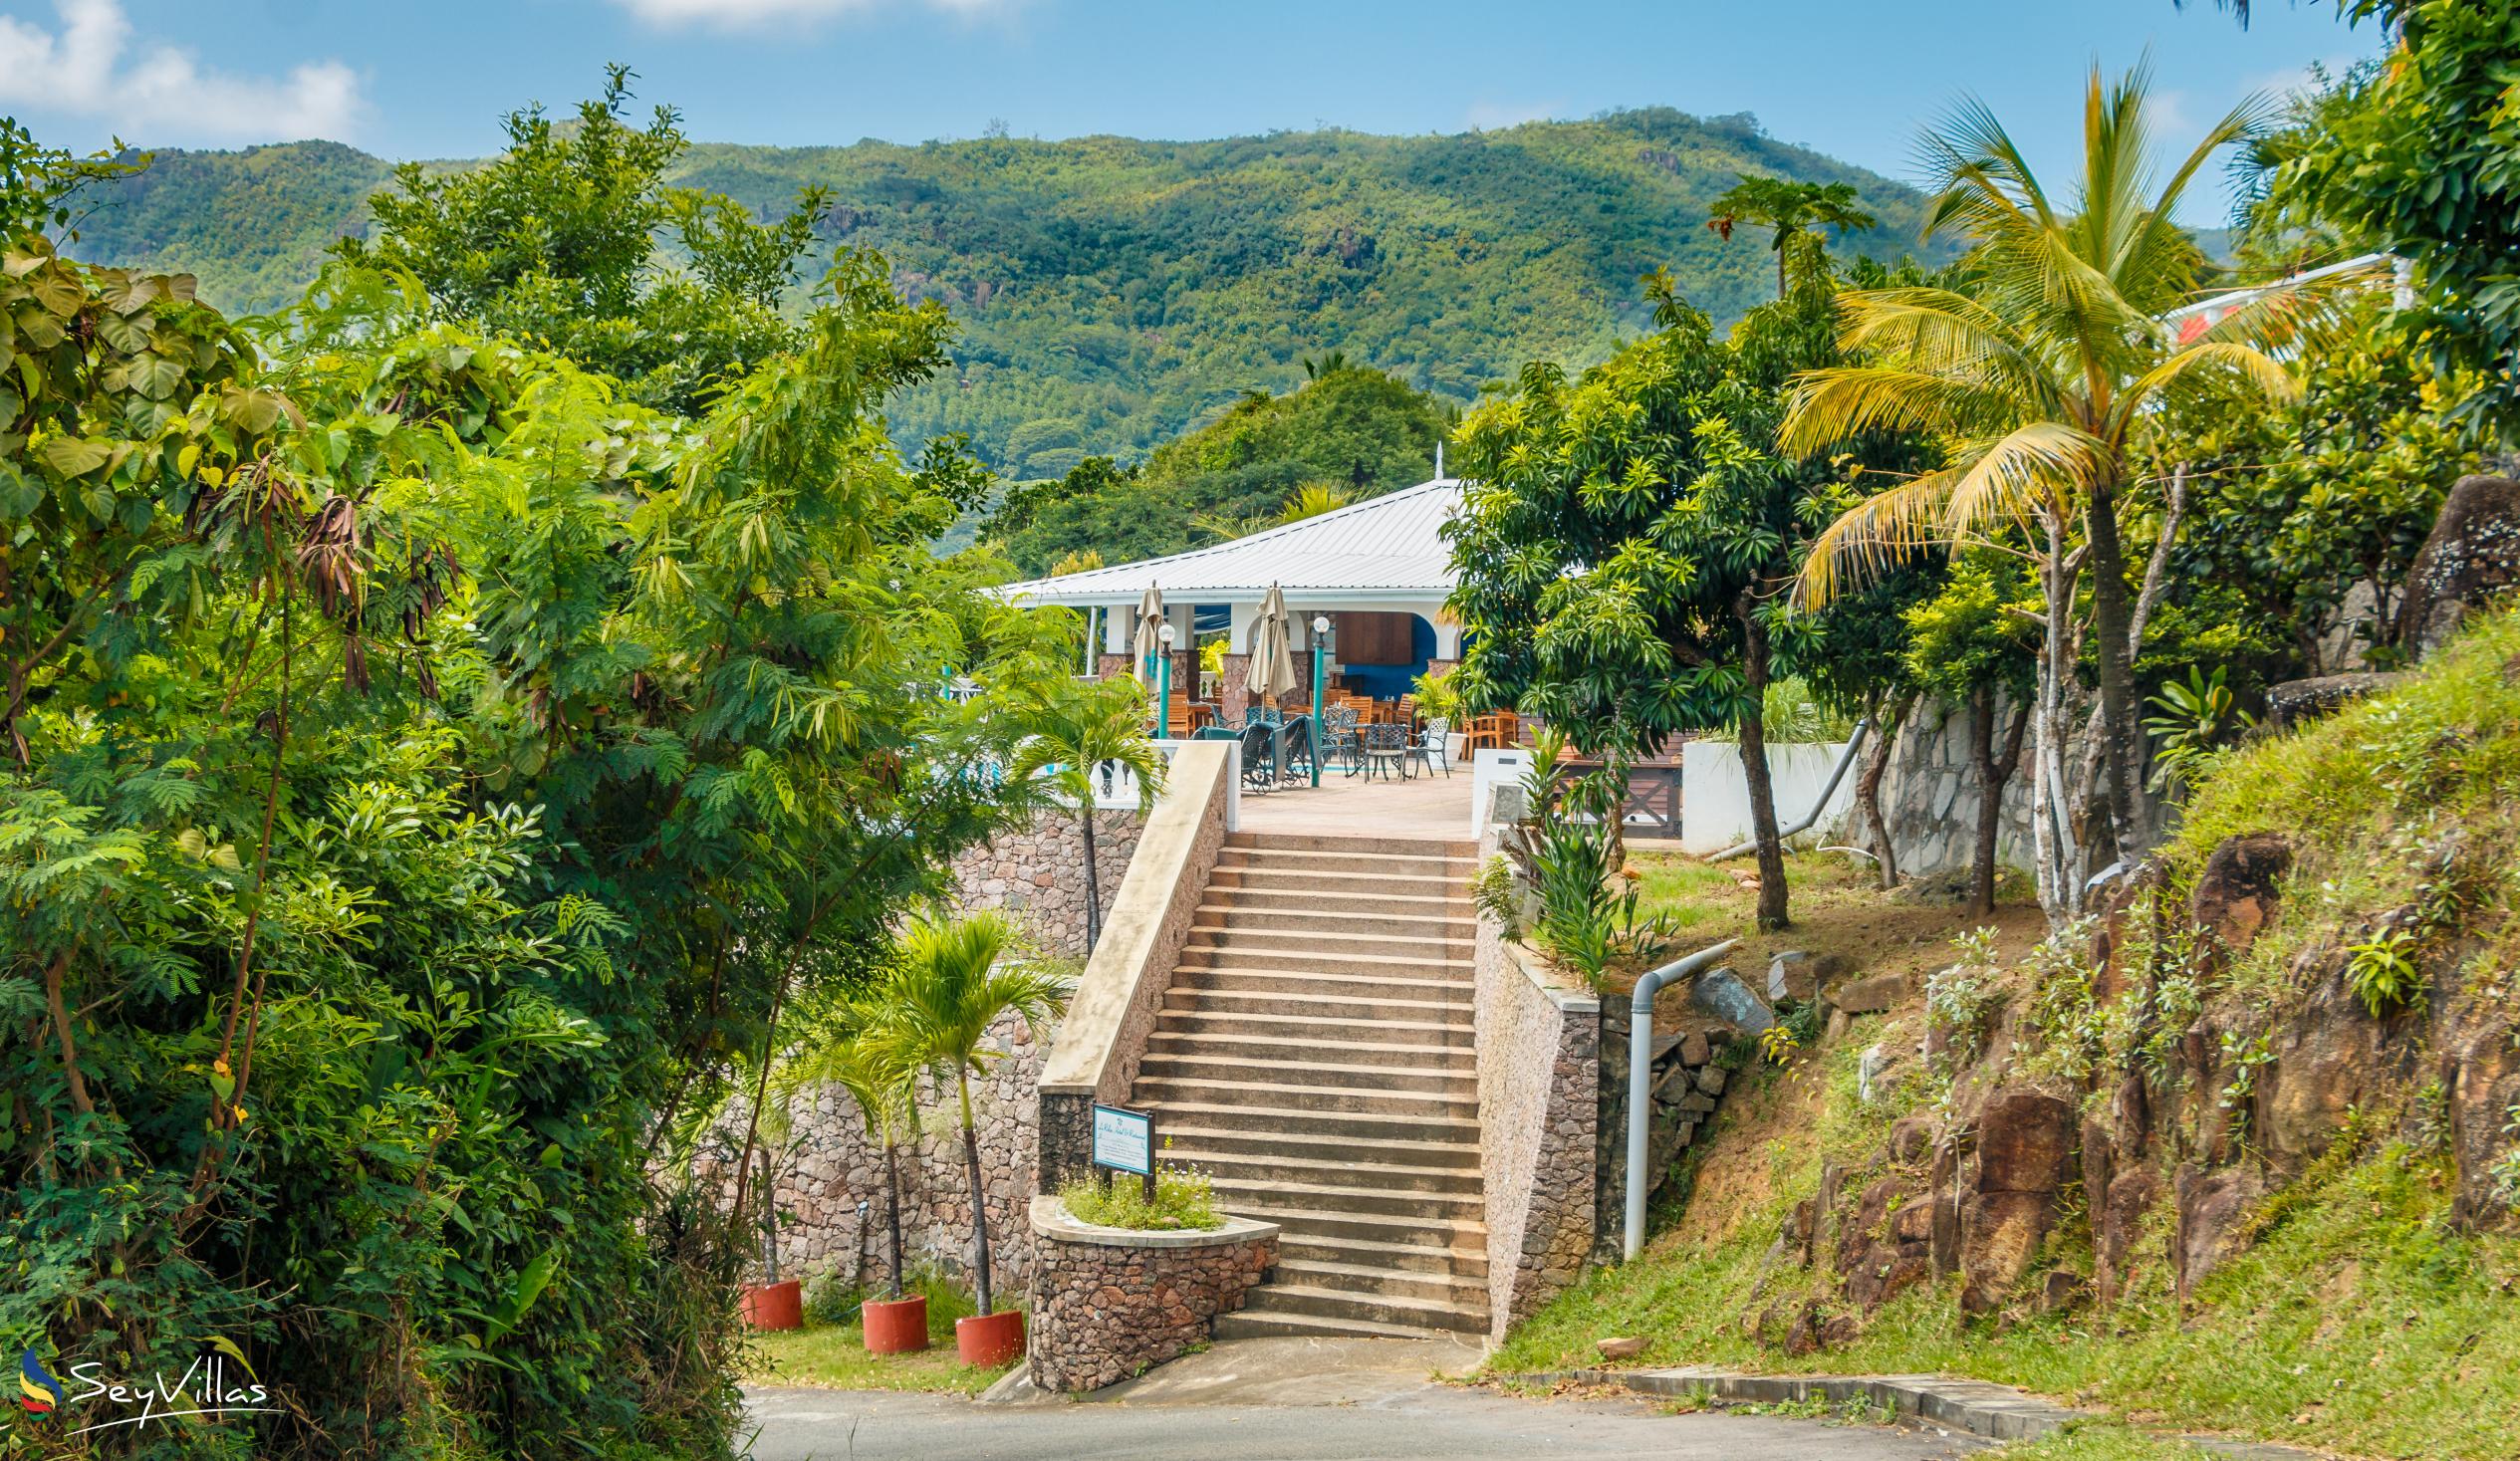 Foto 23: Villa Bel Age - Posizione - Mahé (Seychelles)